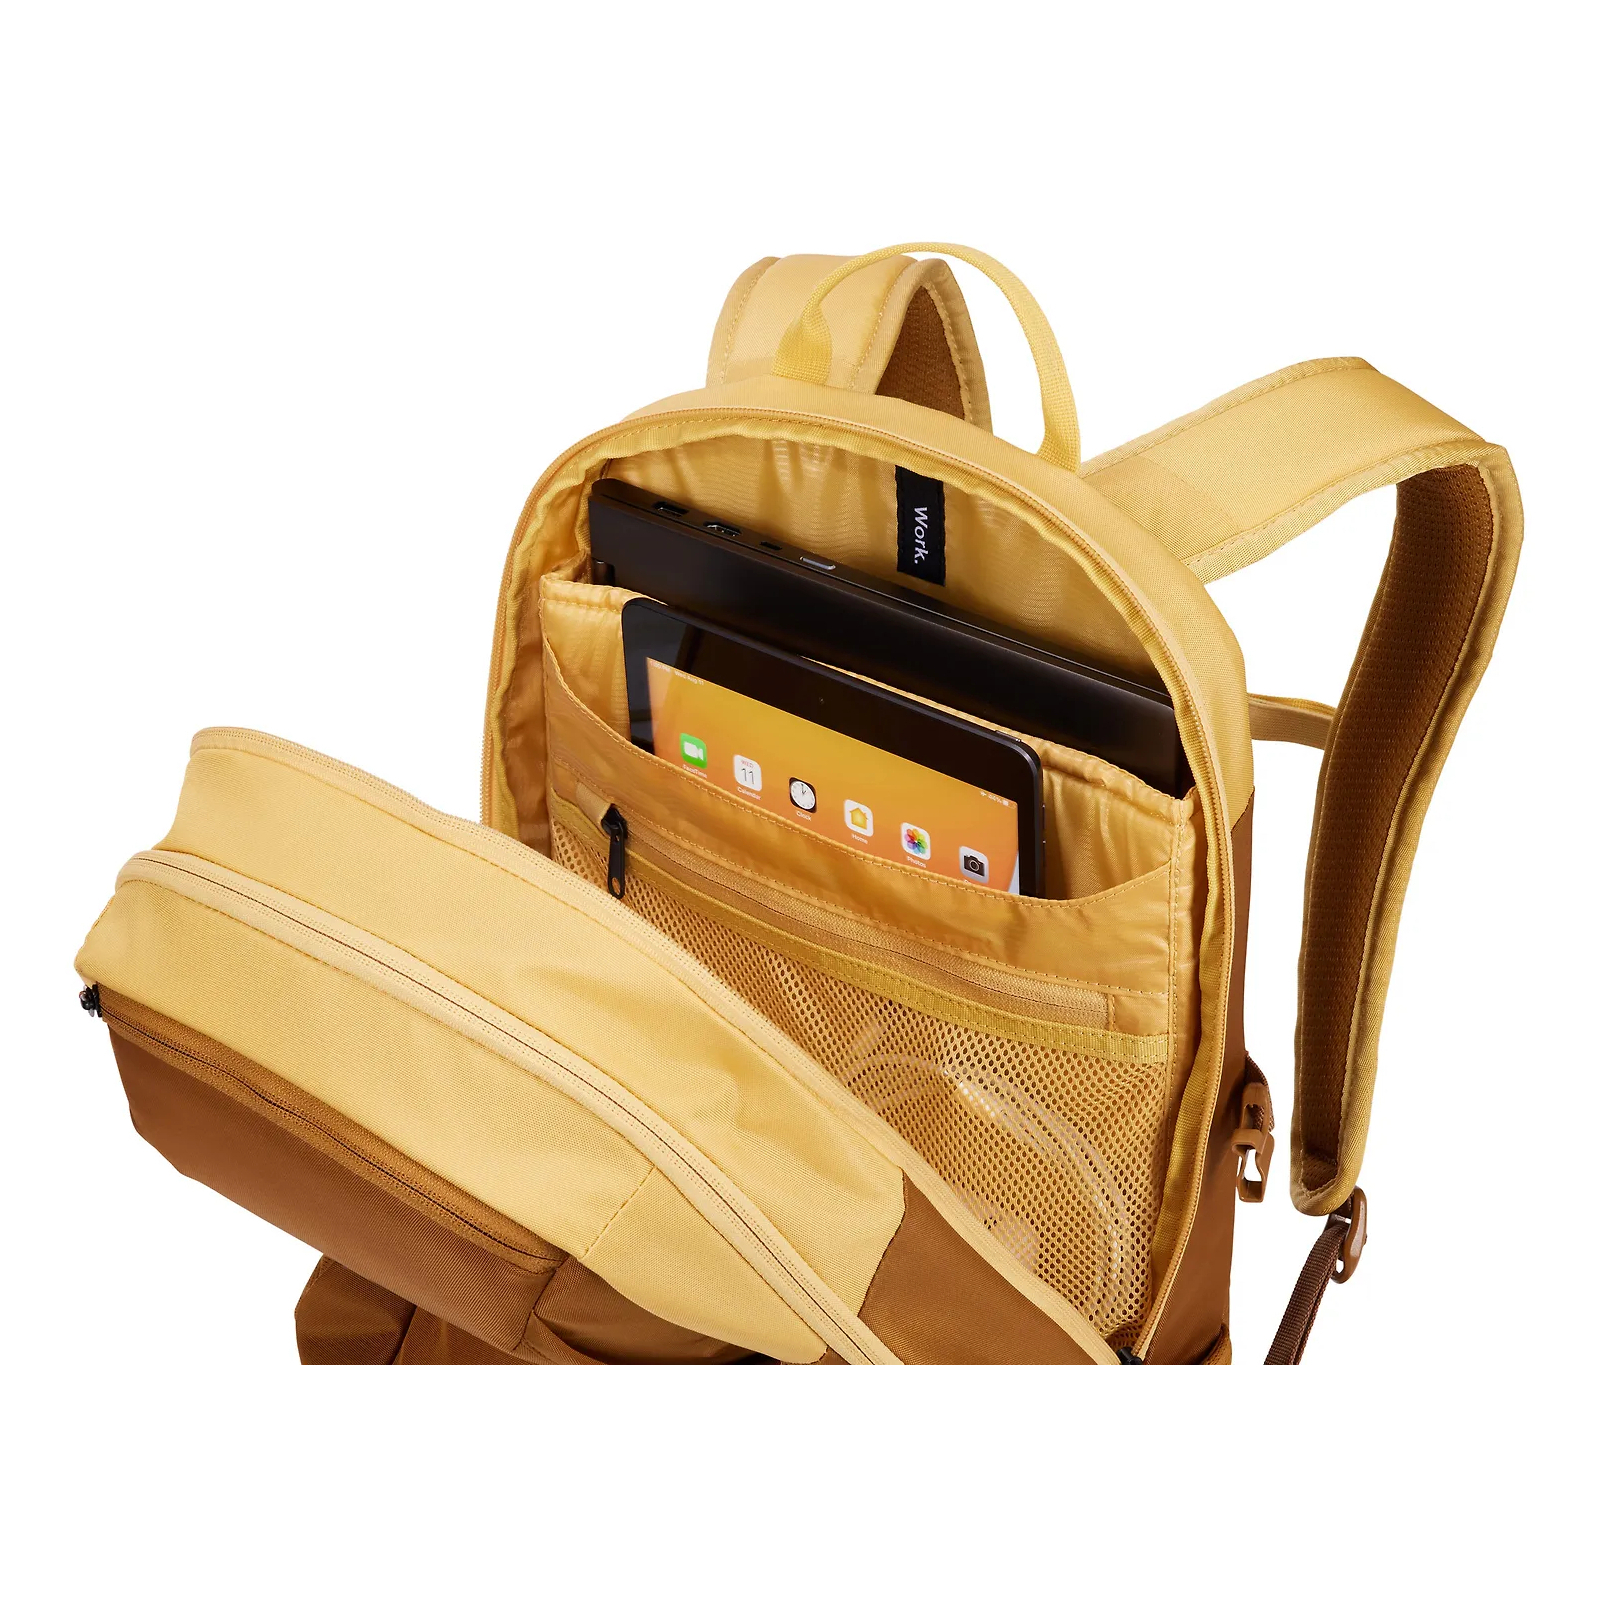 Рюкзак для ноутбука Thule 15.6" EnRoute 23L TEBP4216 Black) (3204841) изображение 4